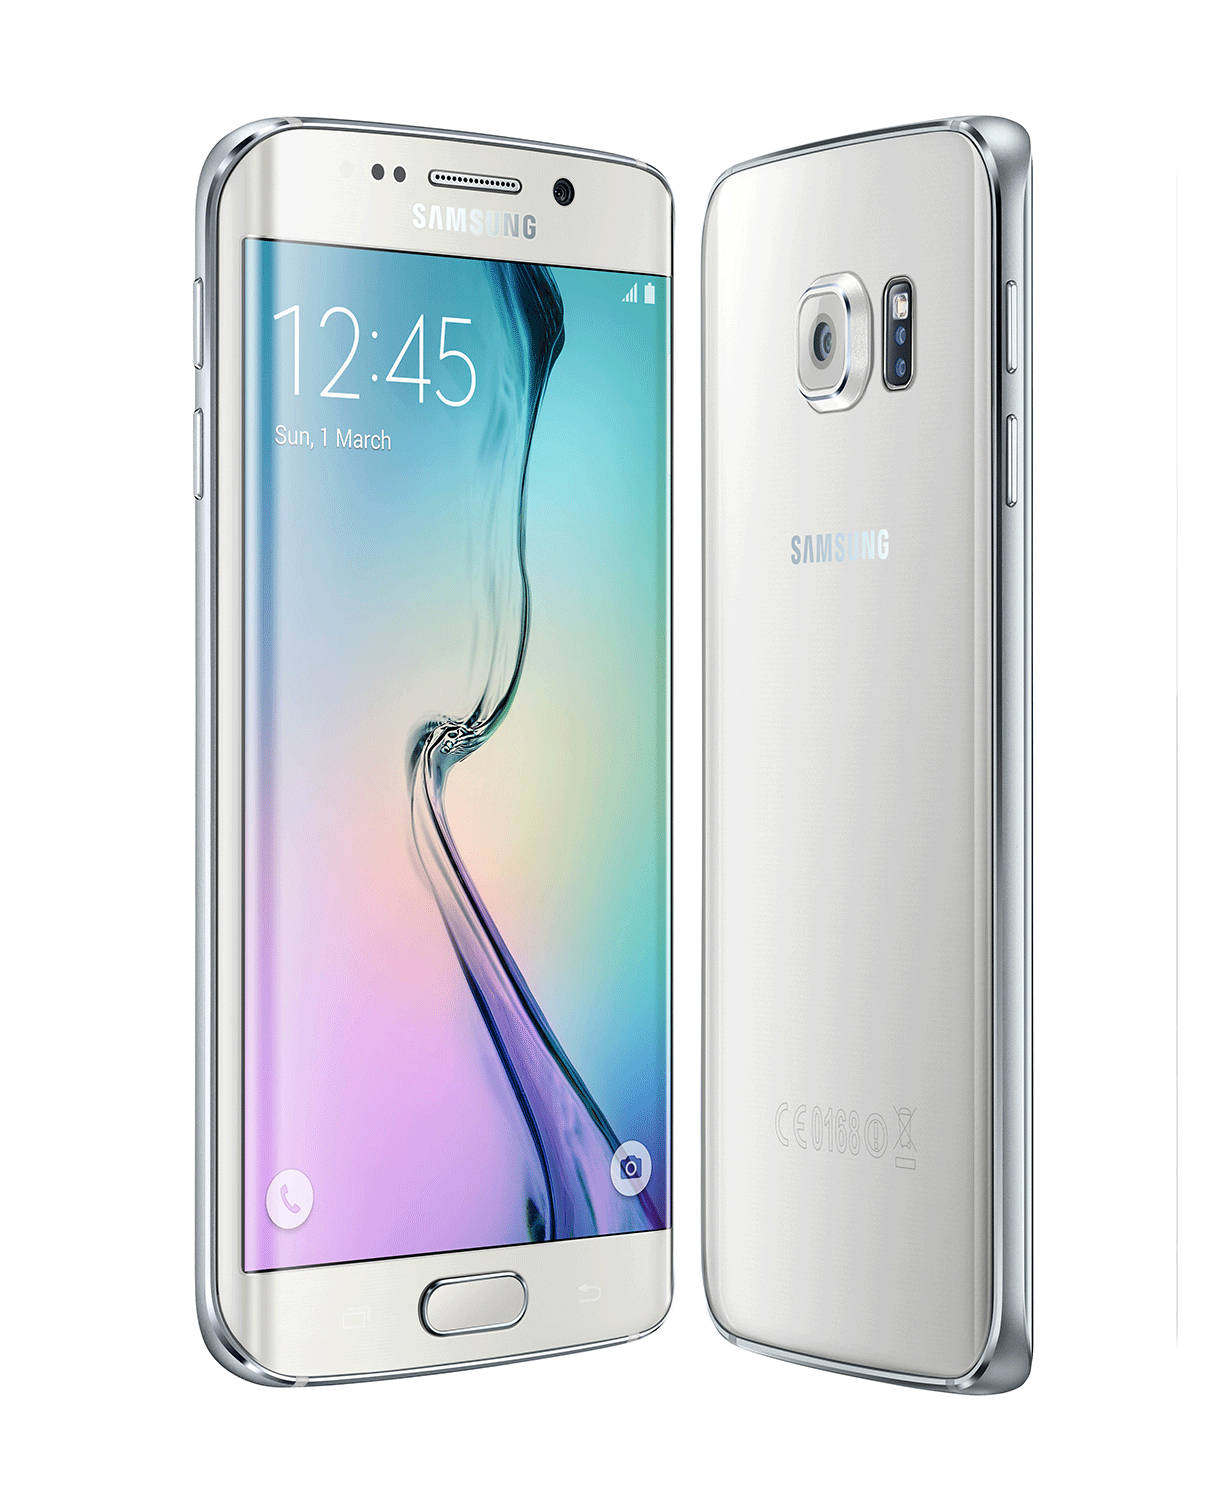 Samsung Galaxy S6 Edge en color oro vista delantera y trasera